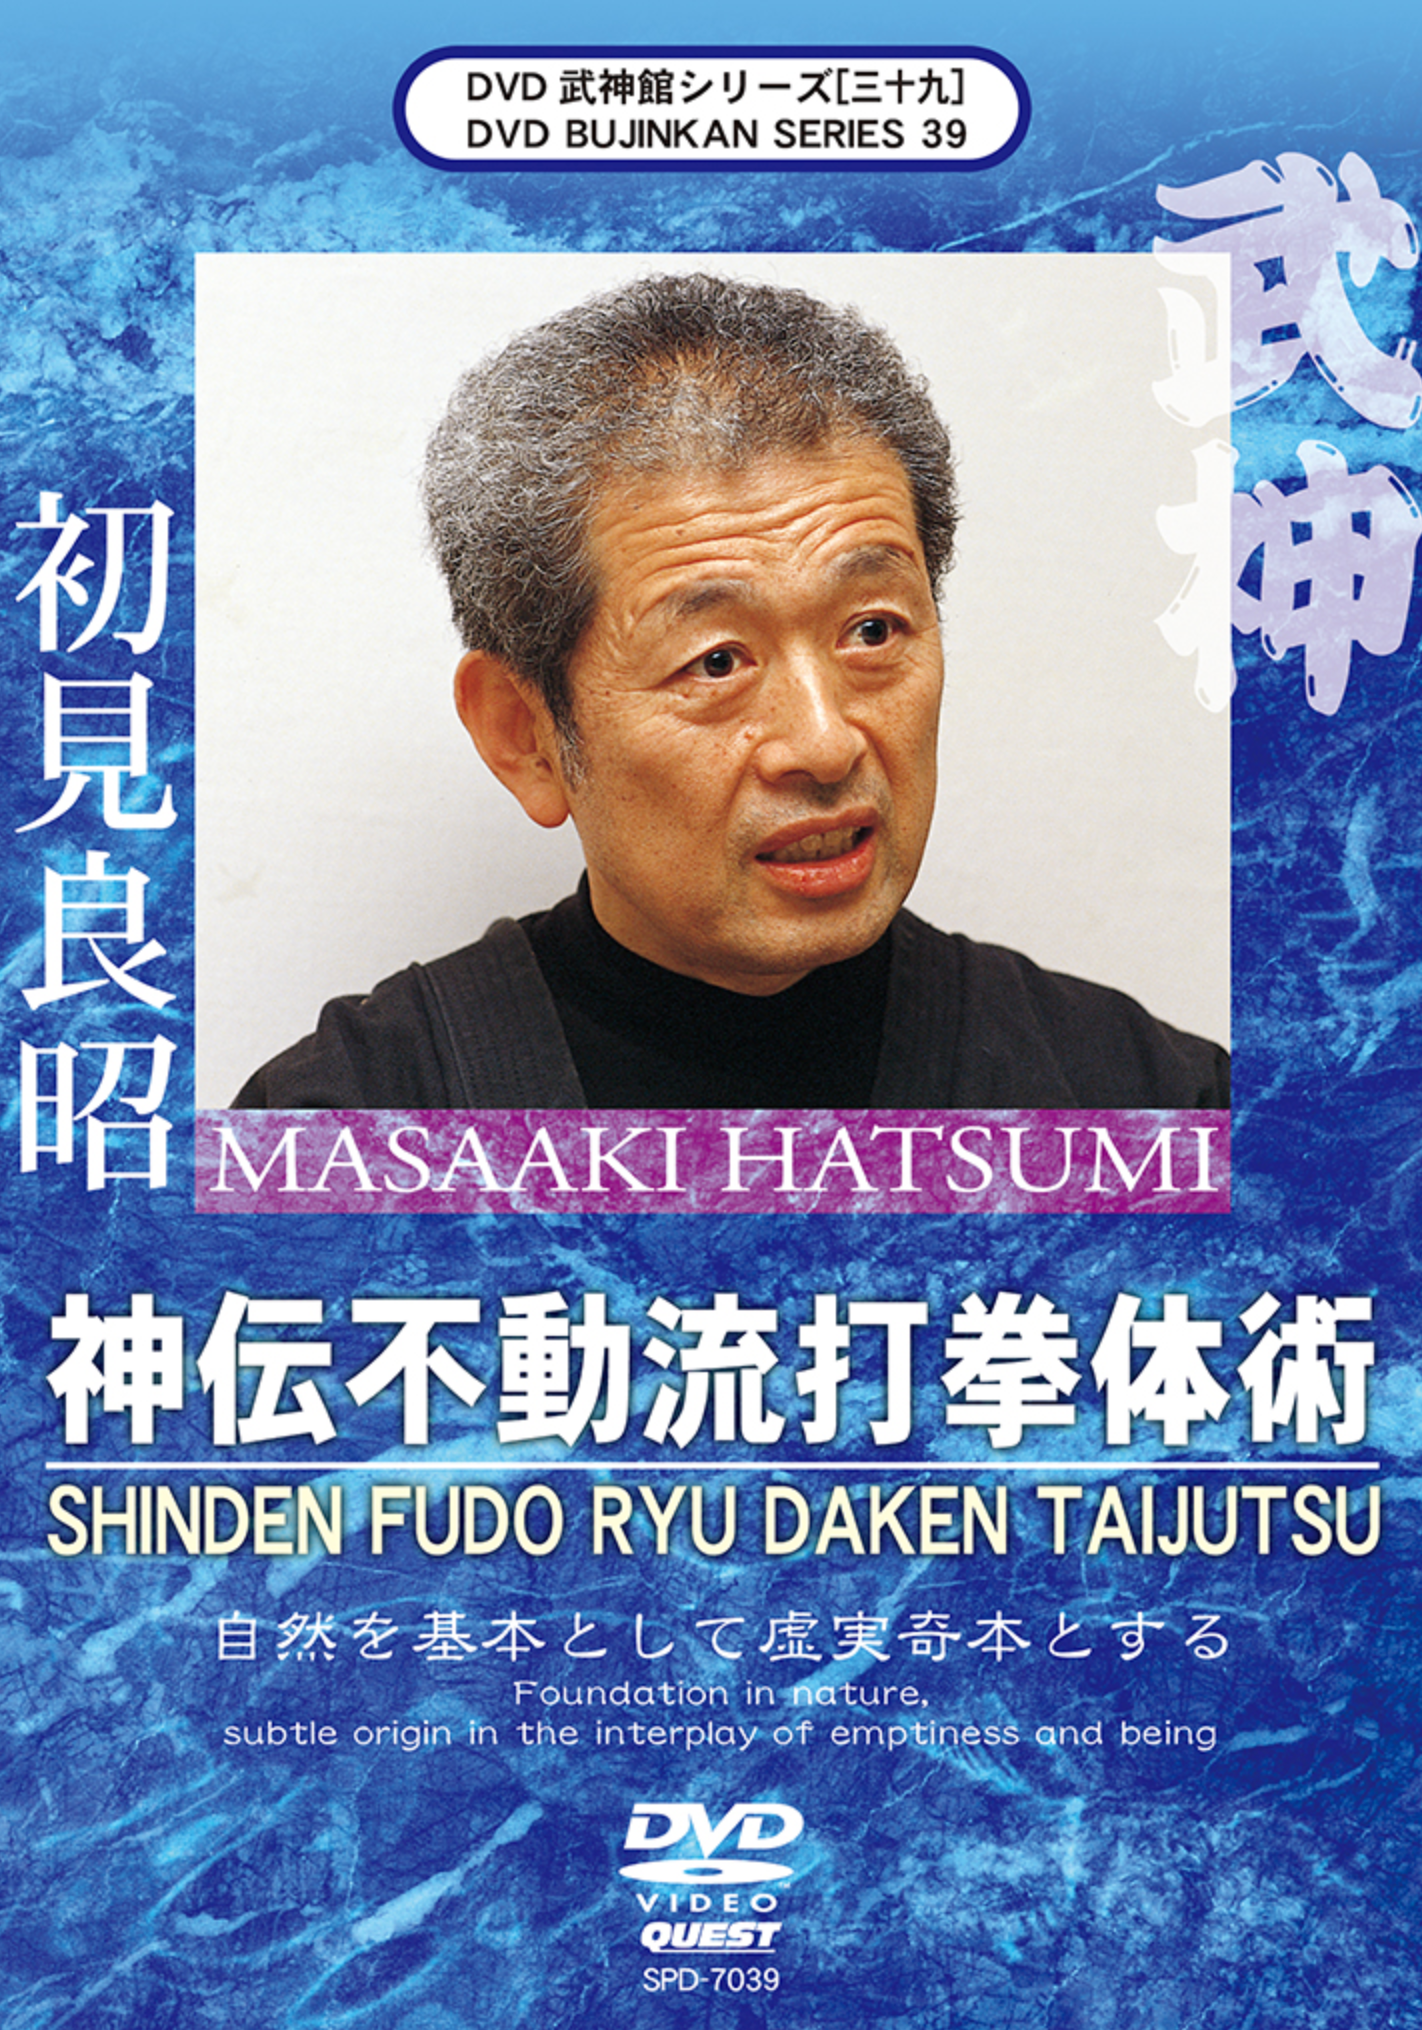 Bujinkan DVD Series 39: Shinden Fudo Ryu Daken Taijutsu with Masaaki Hatsumi - Budovideos Inc